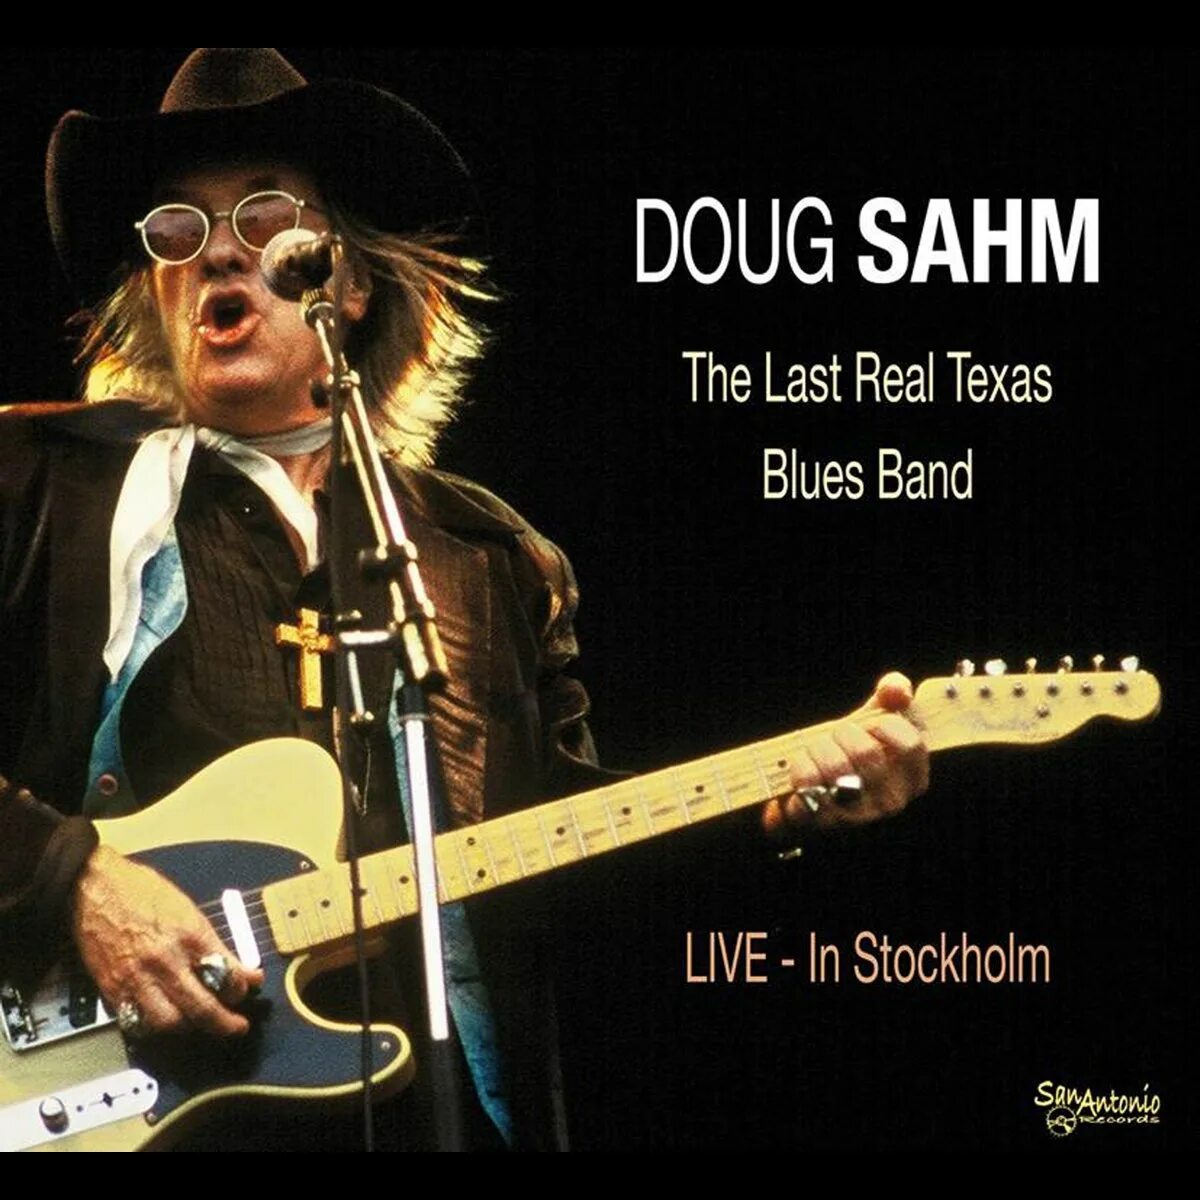 Doug SAHM. Техасский блюз. The Blues Band. Обложка диска Doug SAHM - the last.